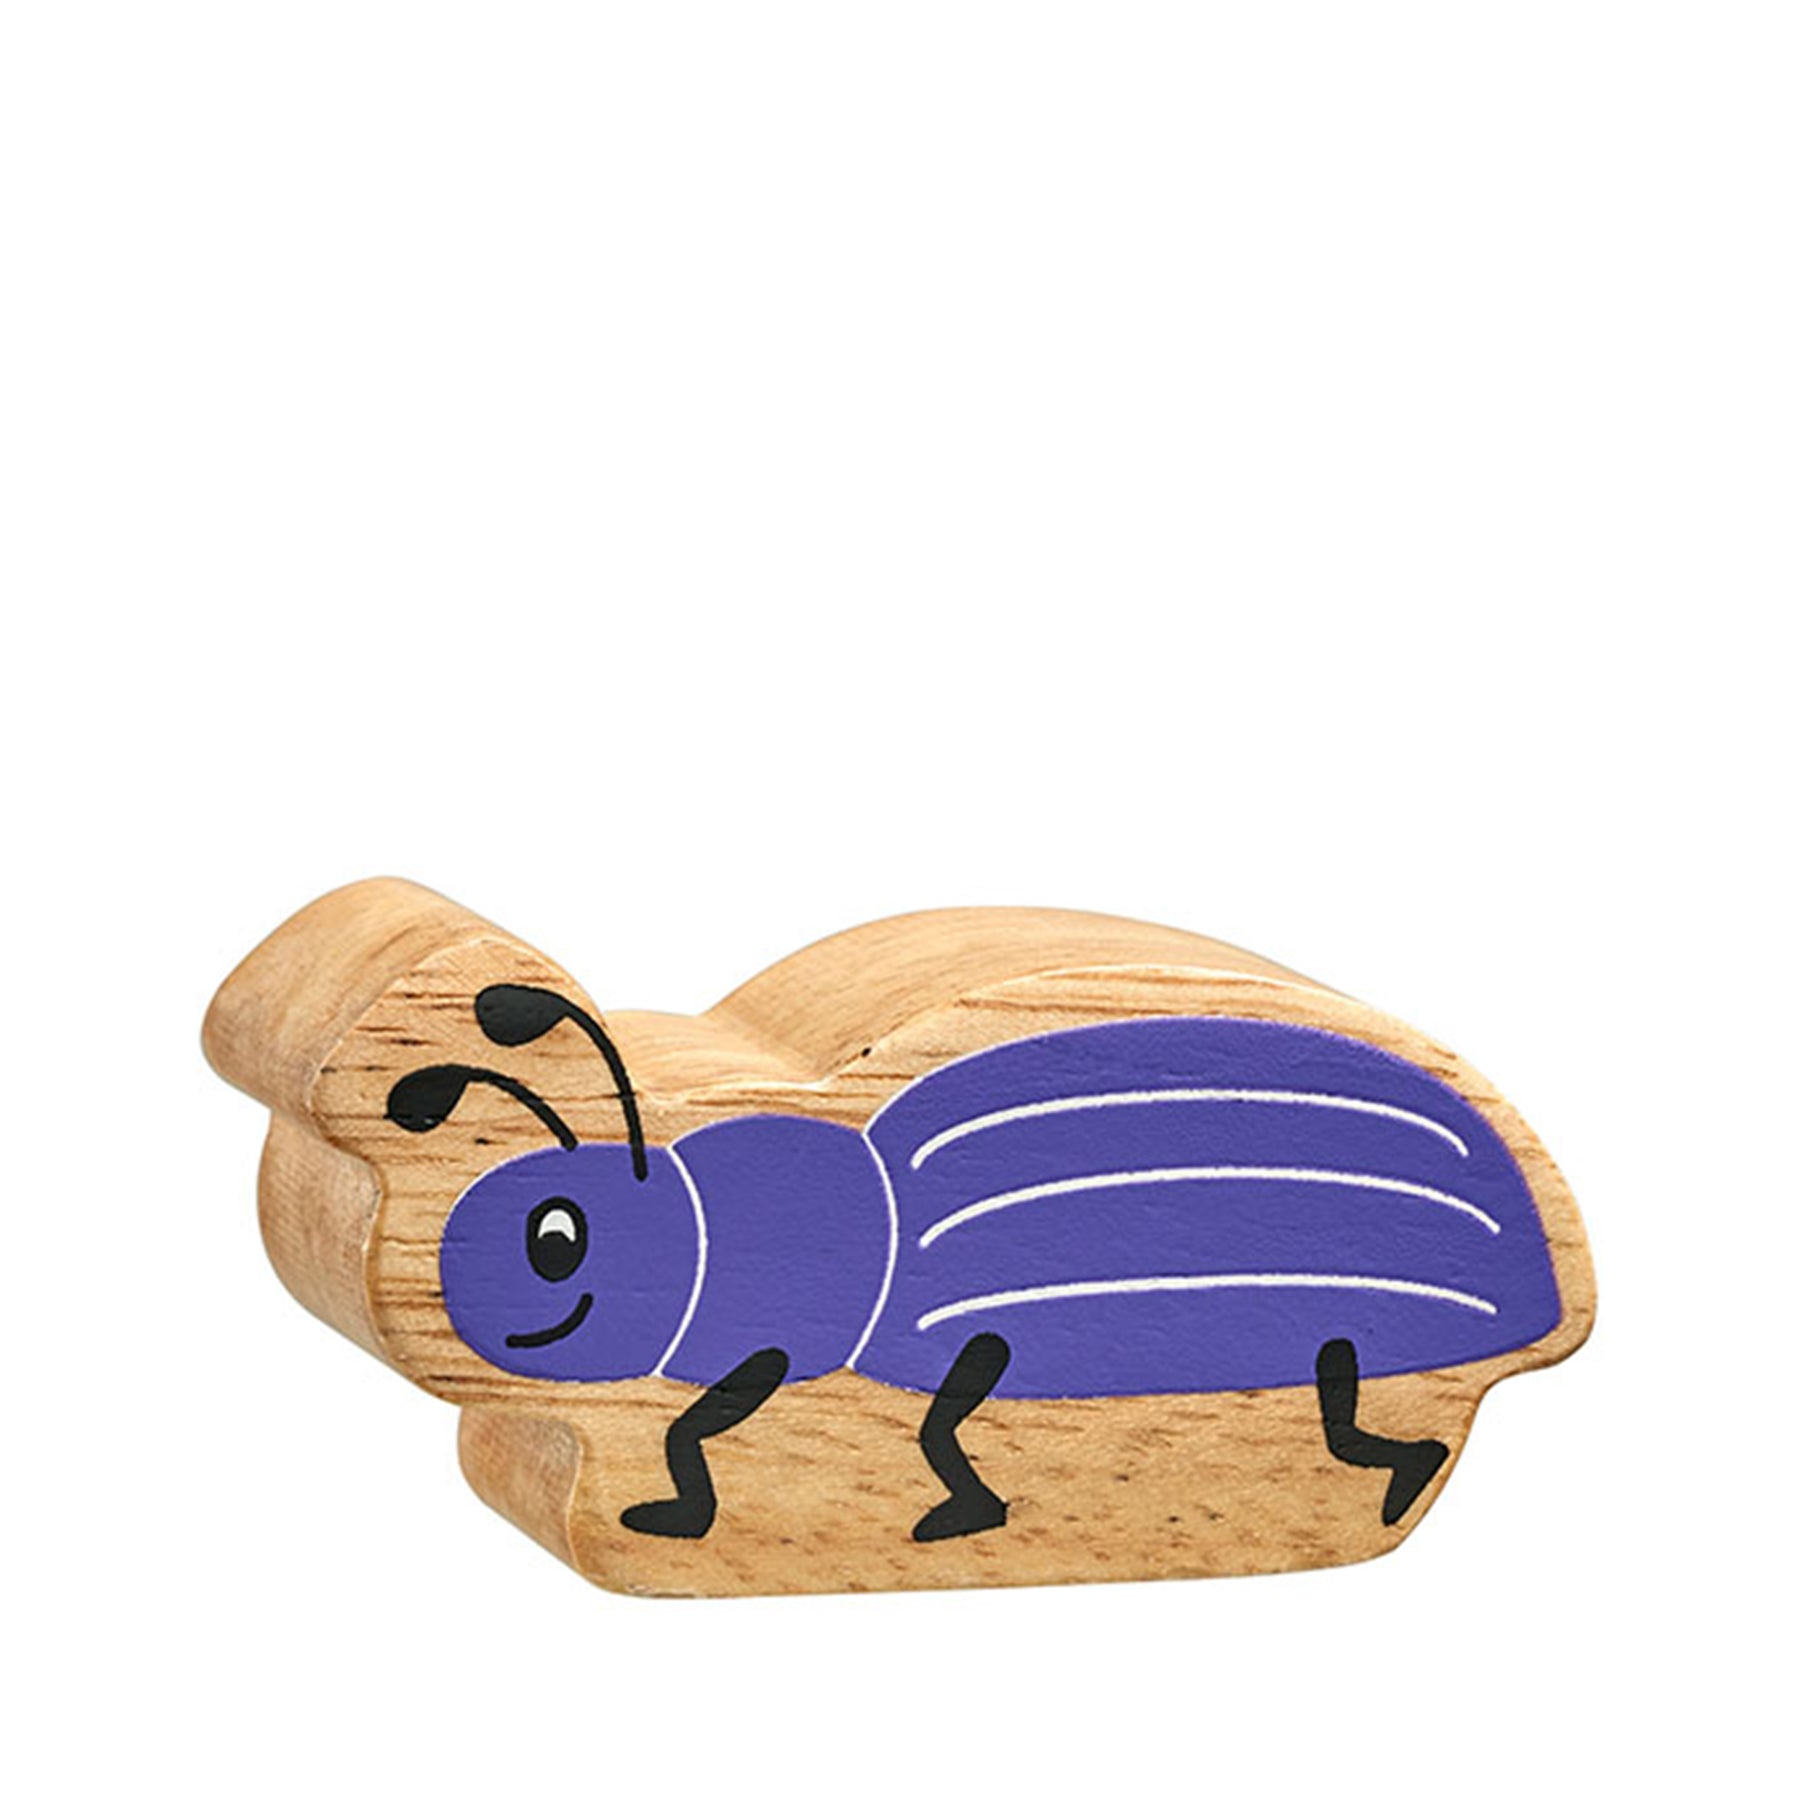 Wooden purple beetle